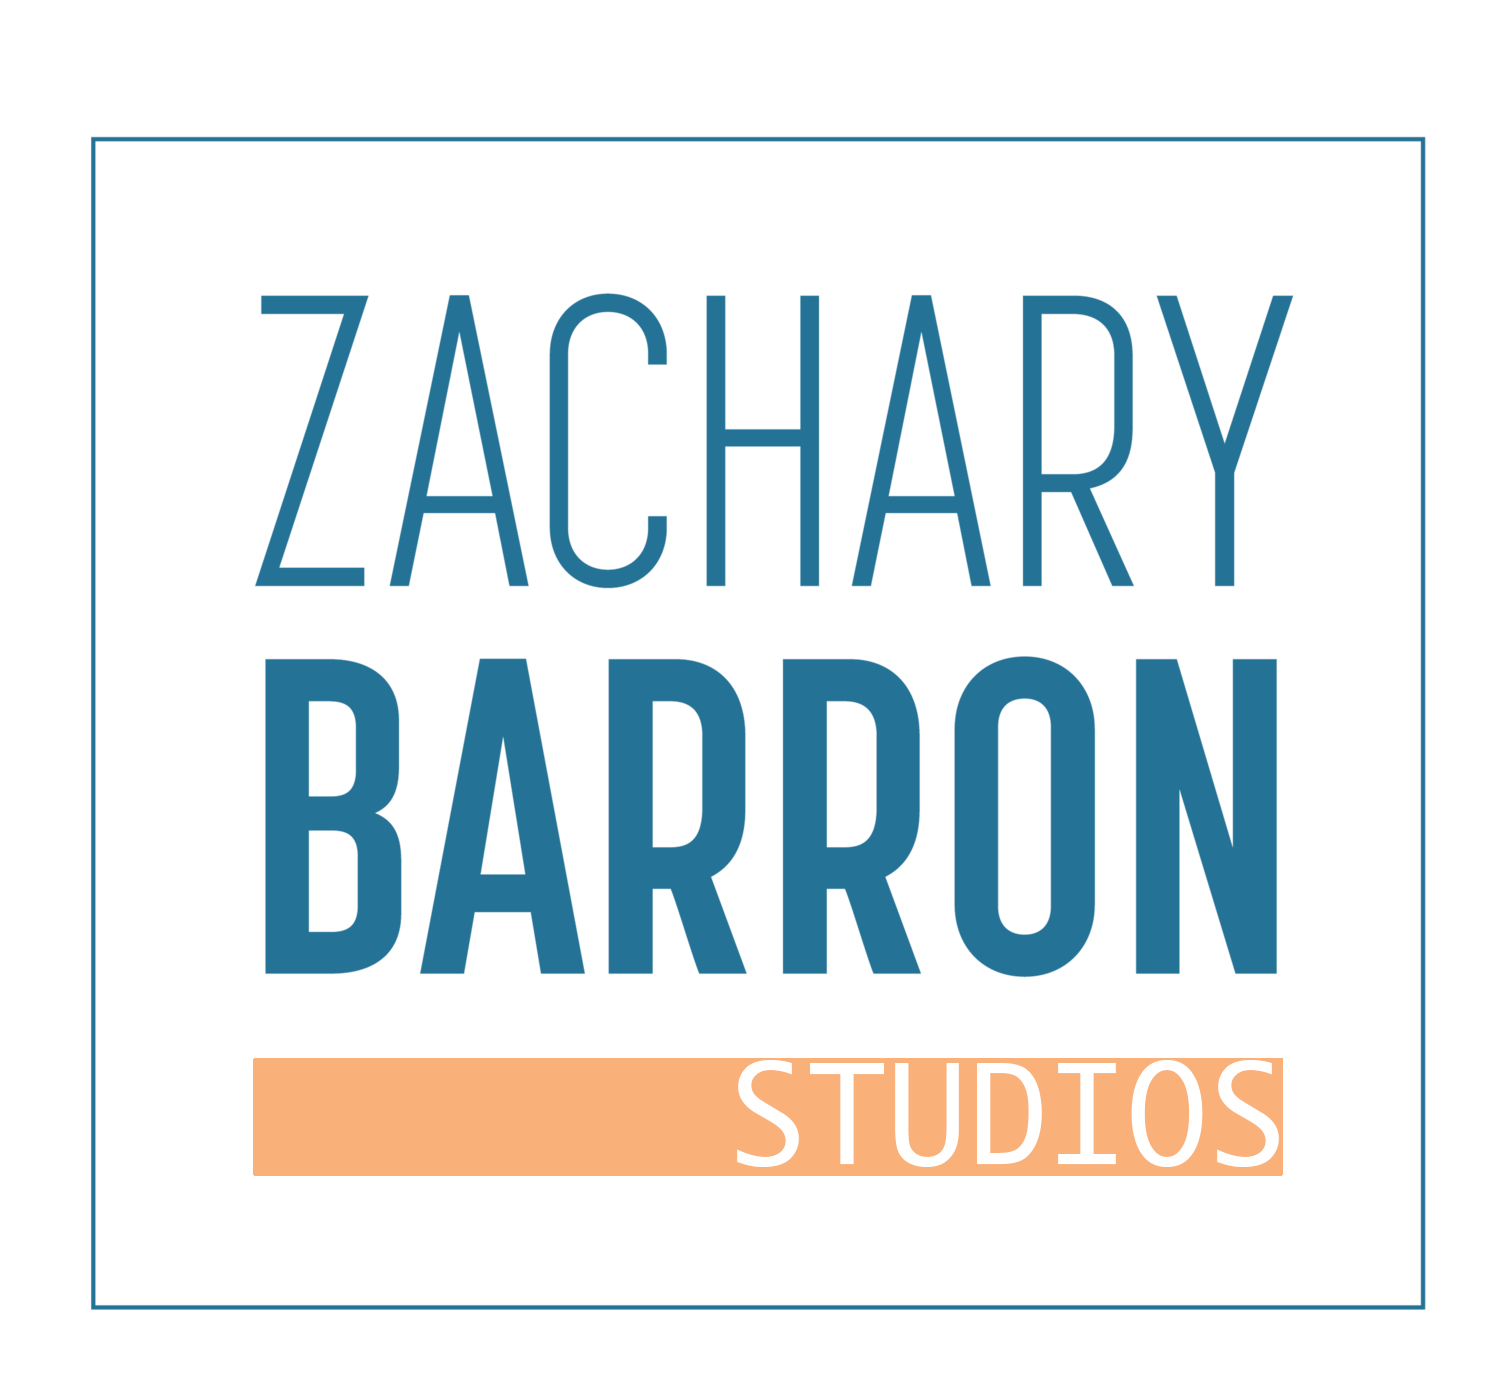 Zachary Barron Studios